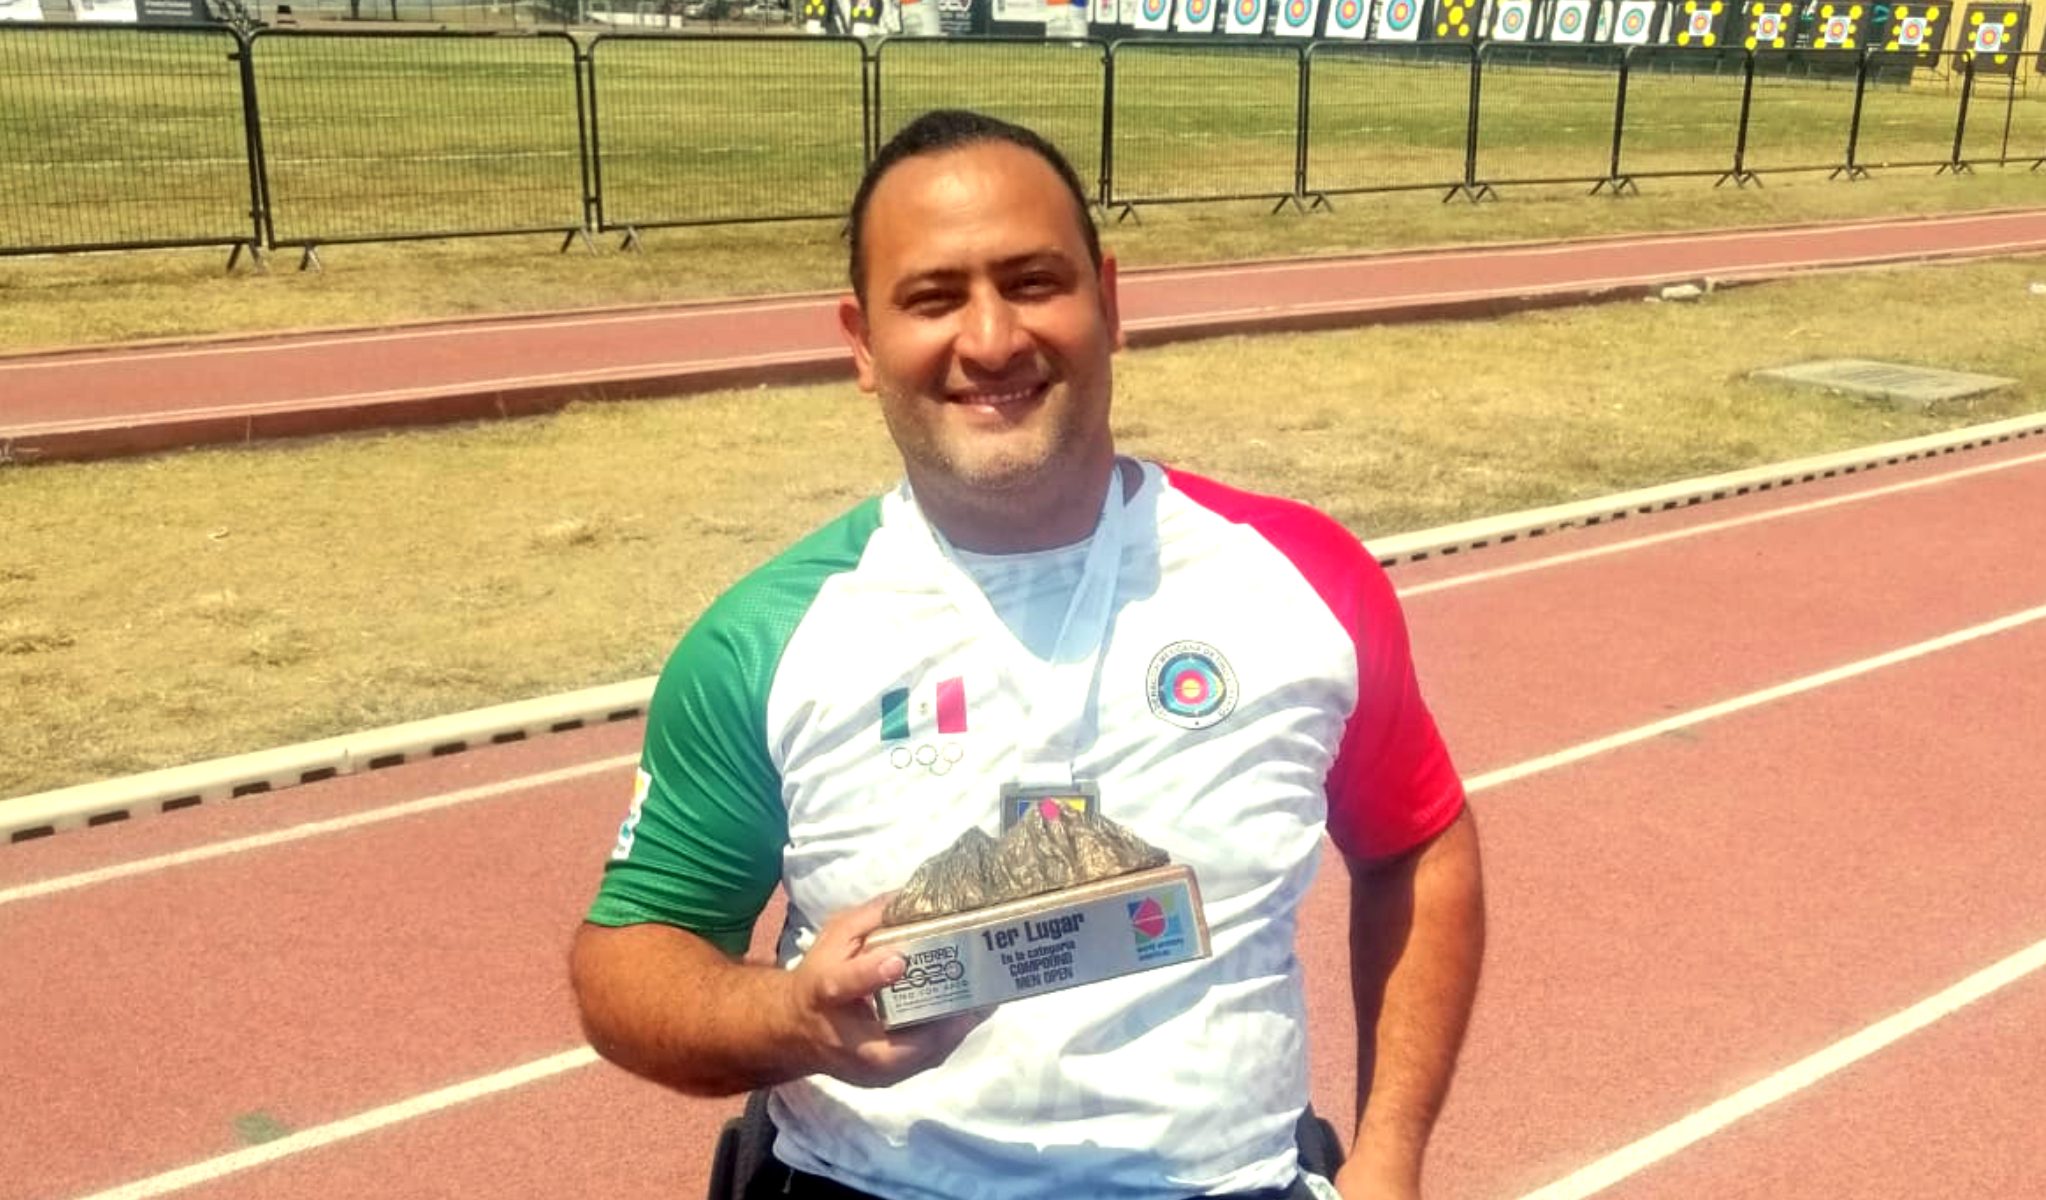 Arquero mexicano Omar Echeverría Espinoza, celebra su medalla de oro y su pase a Tokio 2020 en Nuevo León. Cortesía
